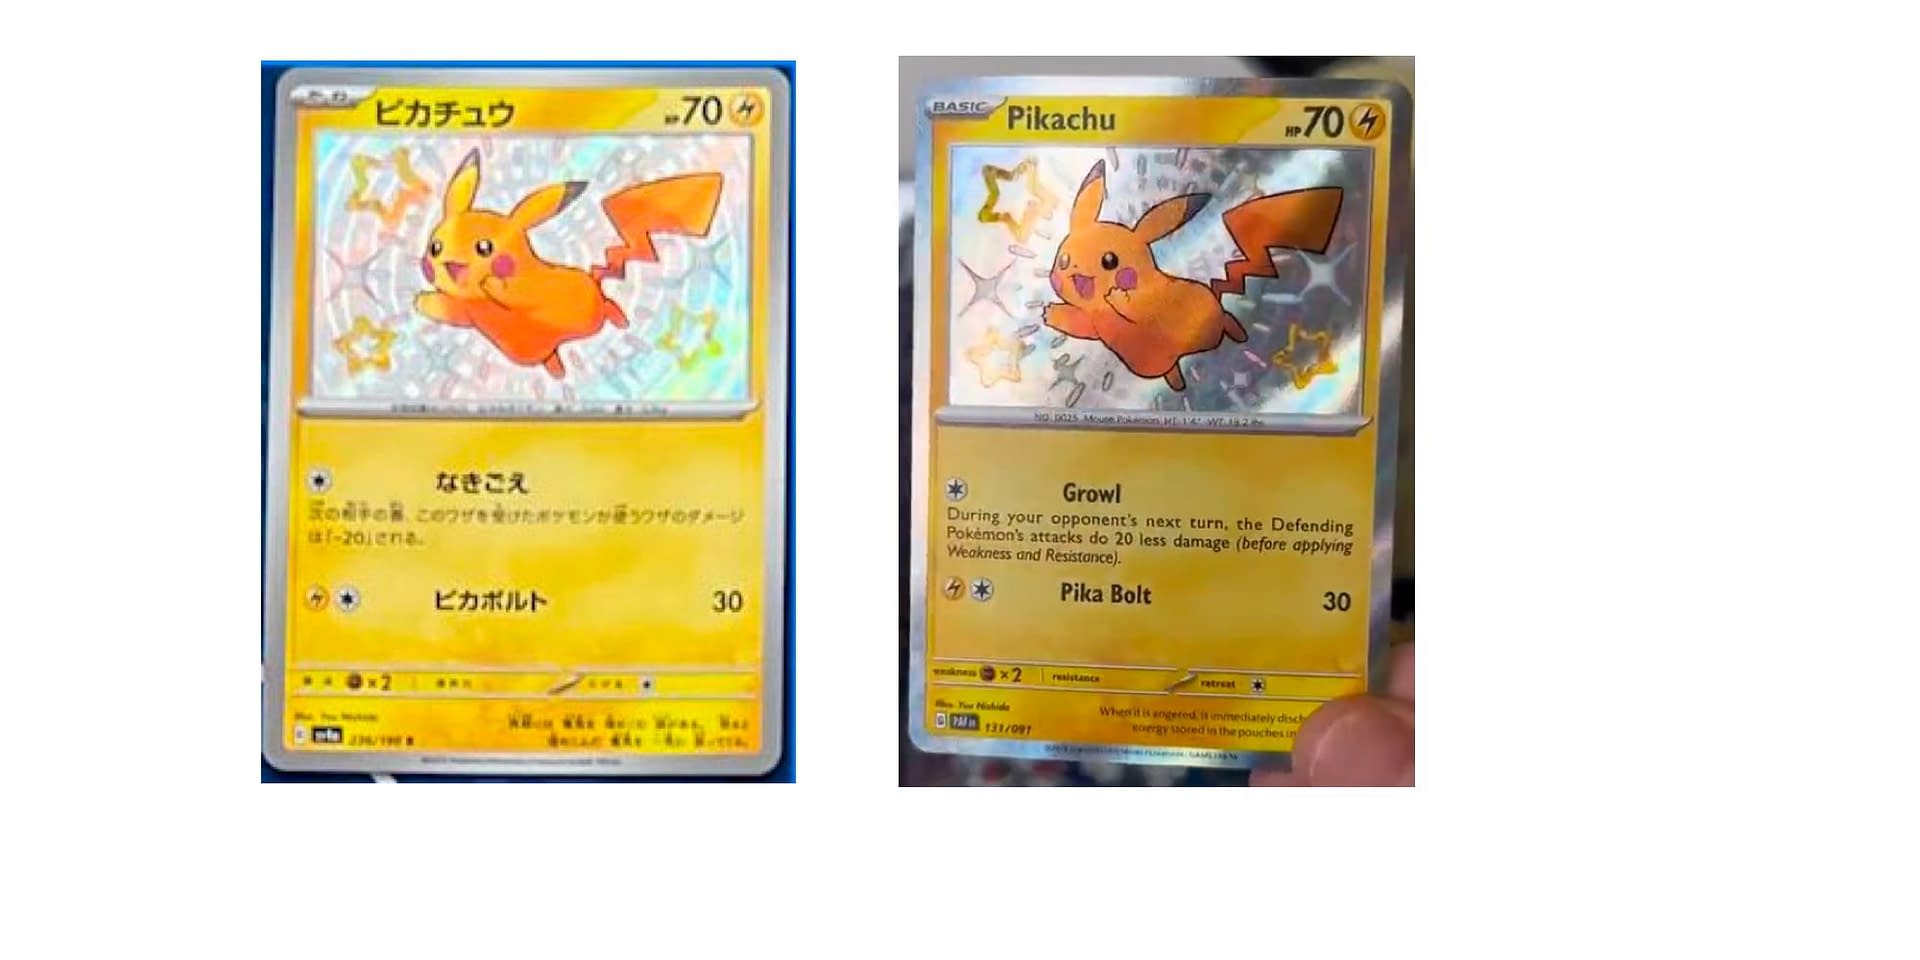 Pokémon TCG Japan's Shiny Treasure Ex: Shiny Mimikyu